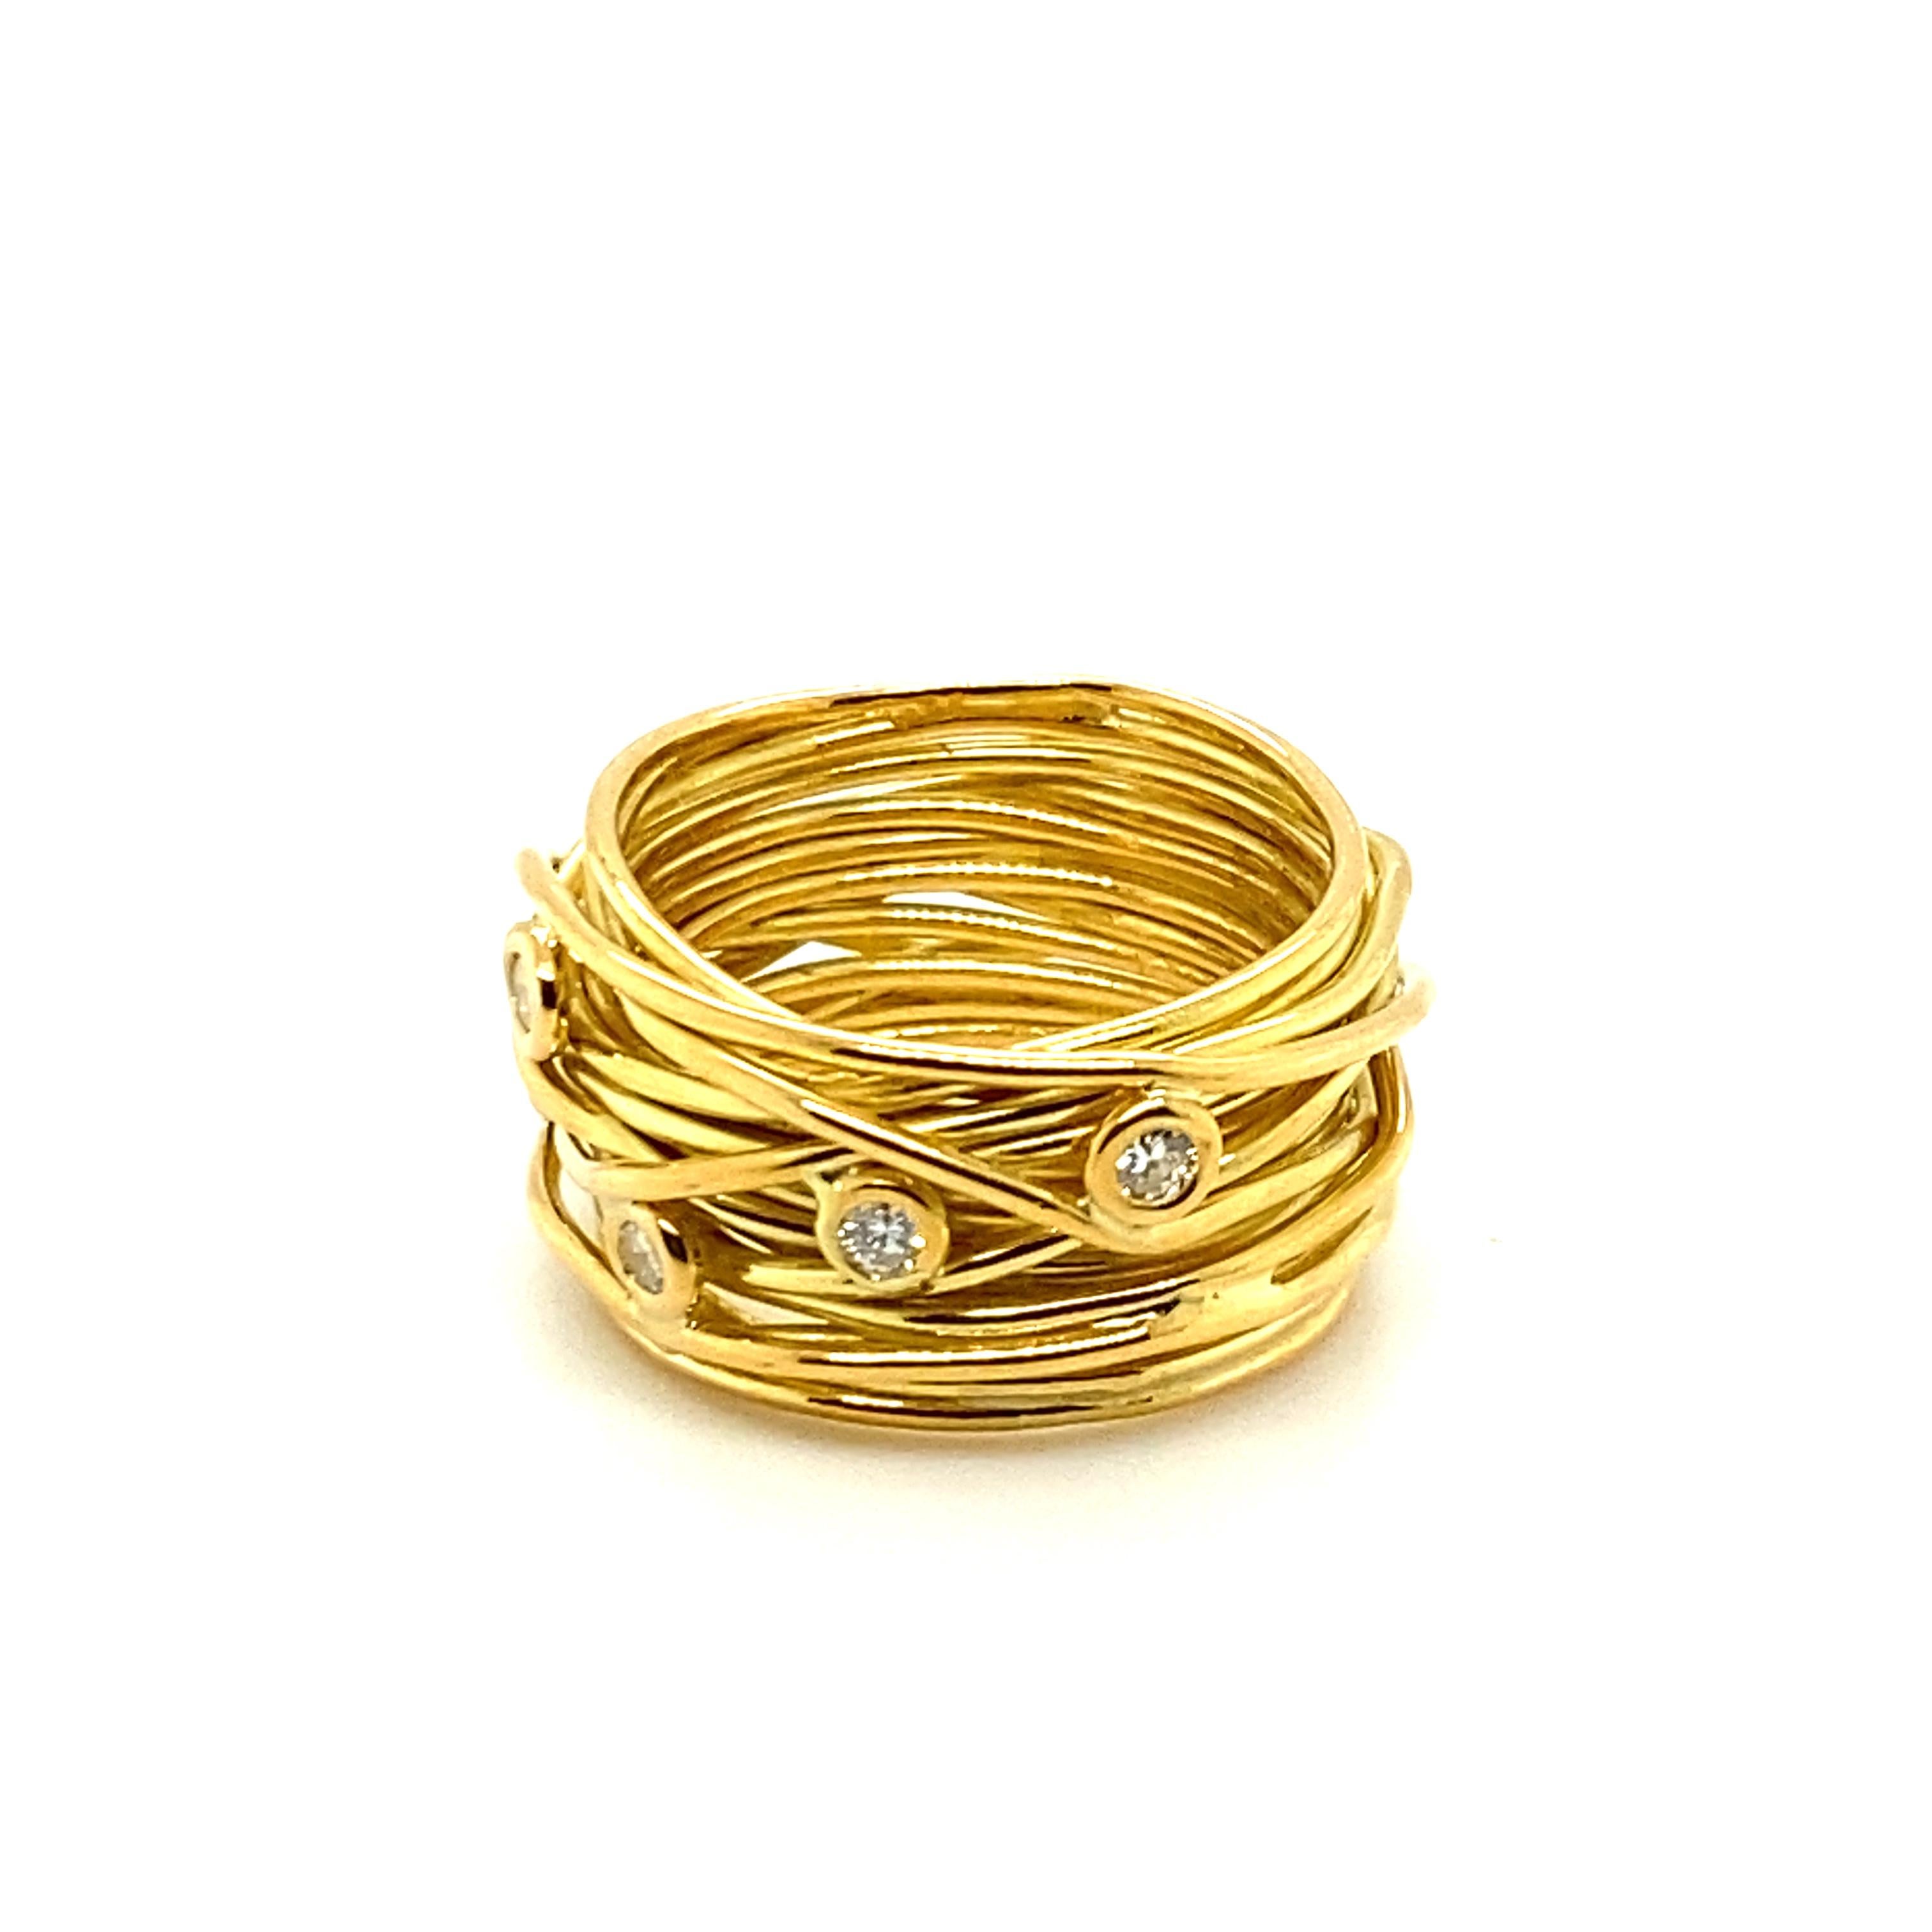 Dieser bezaubernde Ring des Schweizer Juweliers Devon ist wie ein zartes Nest aus Diamant-'Eiern' gestaltet.
Das fein komponierte Band aus 18 Karat Gelbgold ist mit fünf Diamanten im Brillantschliff von Farbe G/H und Reinheit vs mit einem